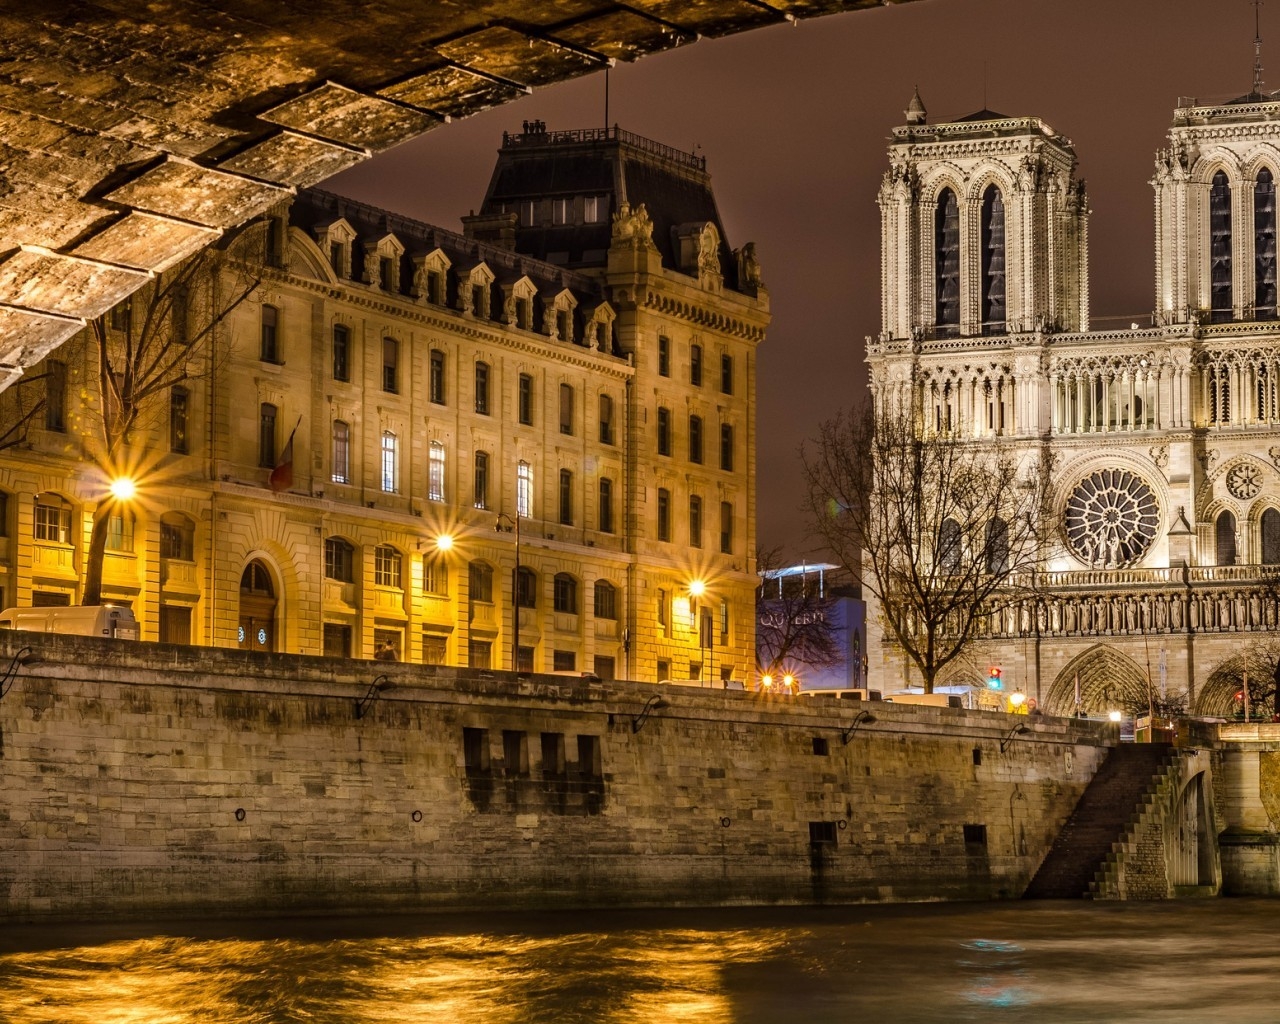 Notre Dame de Paris Front View for 1280 x 1024 resolution